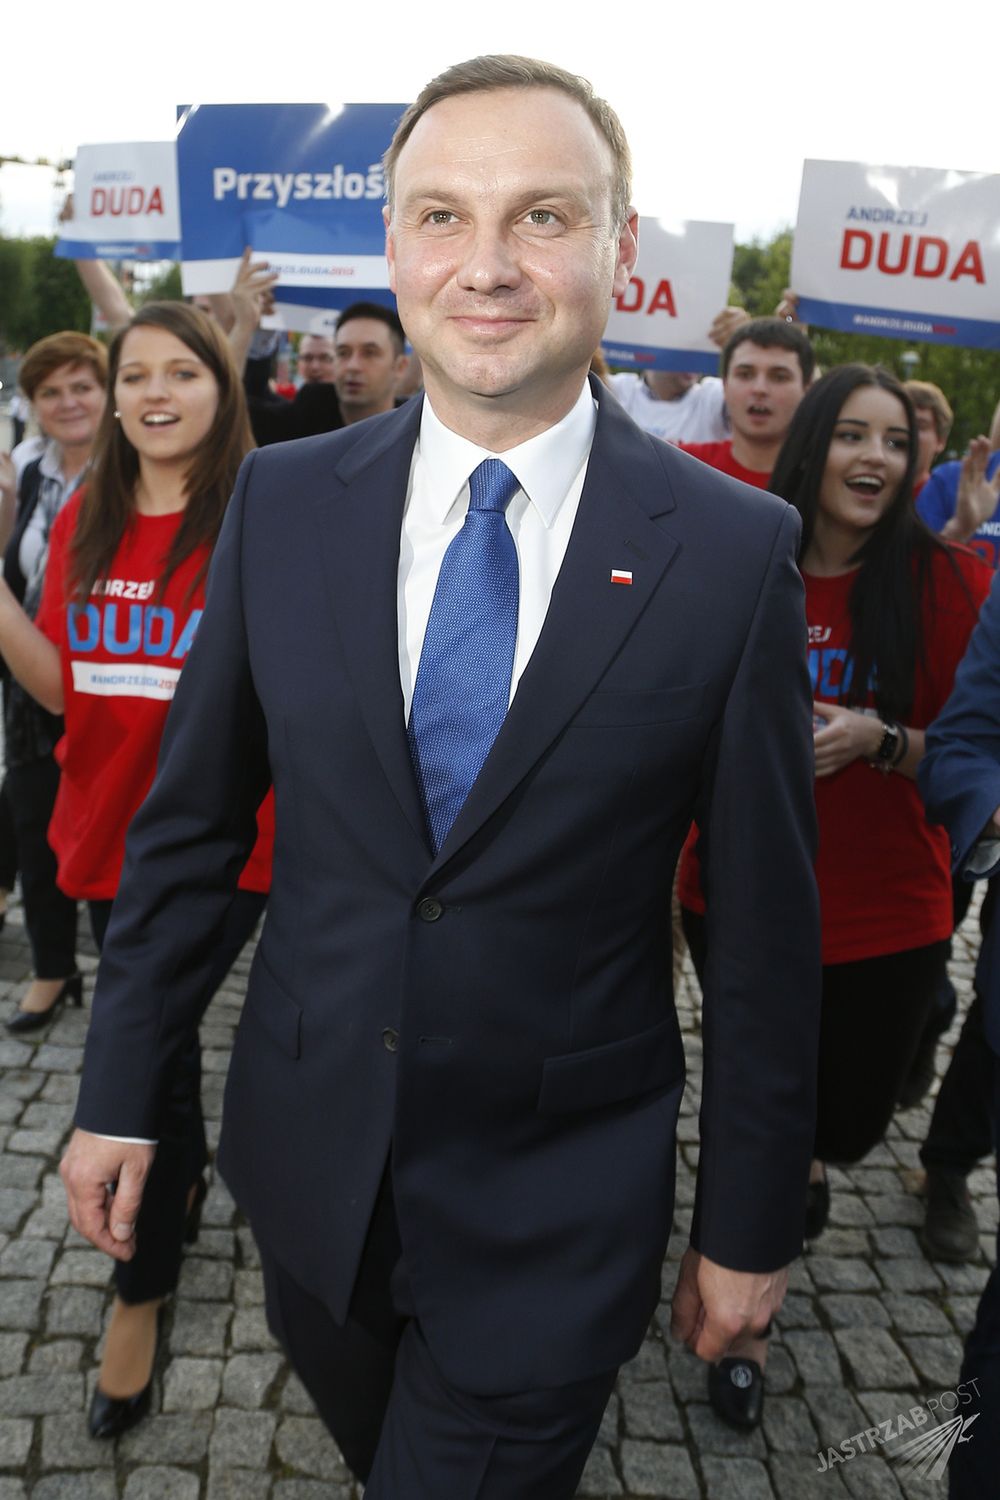 Andrzej Duda wiek. Debata 2015 - Andrzej Duda